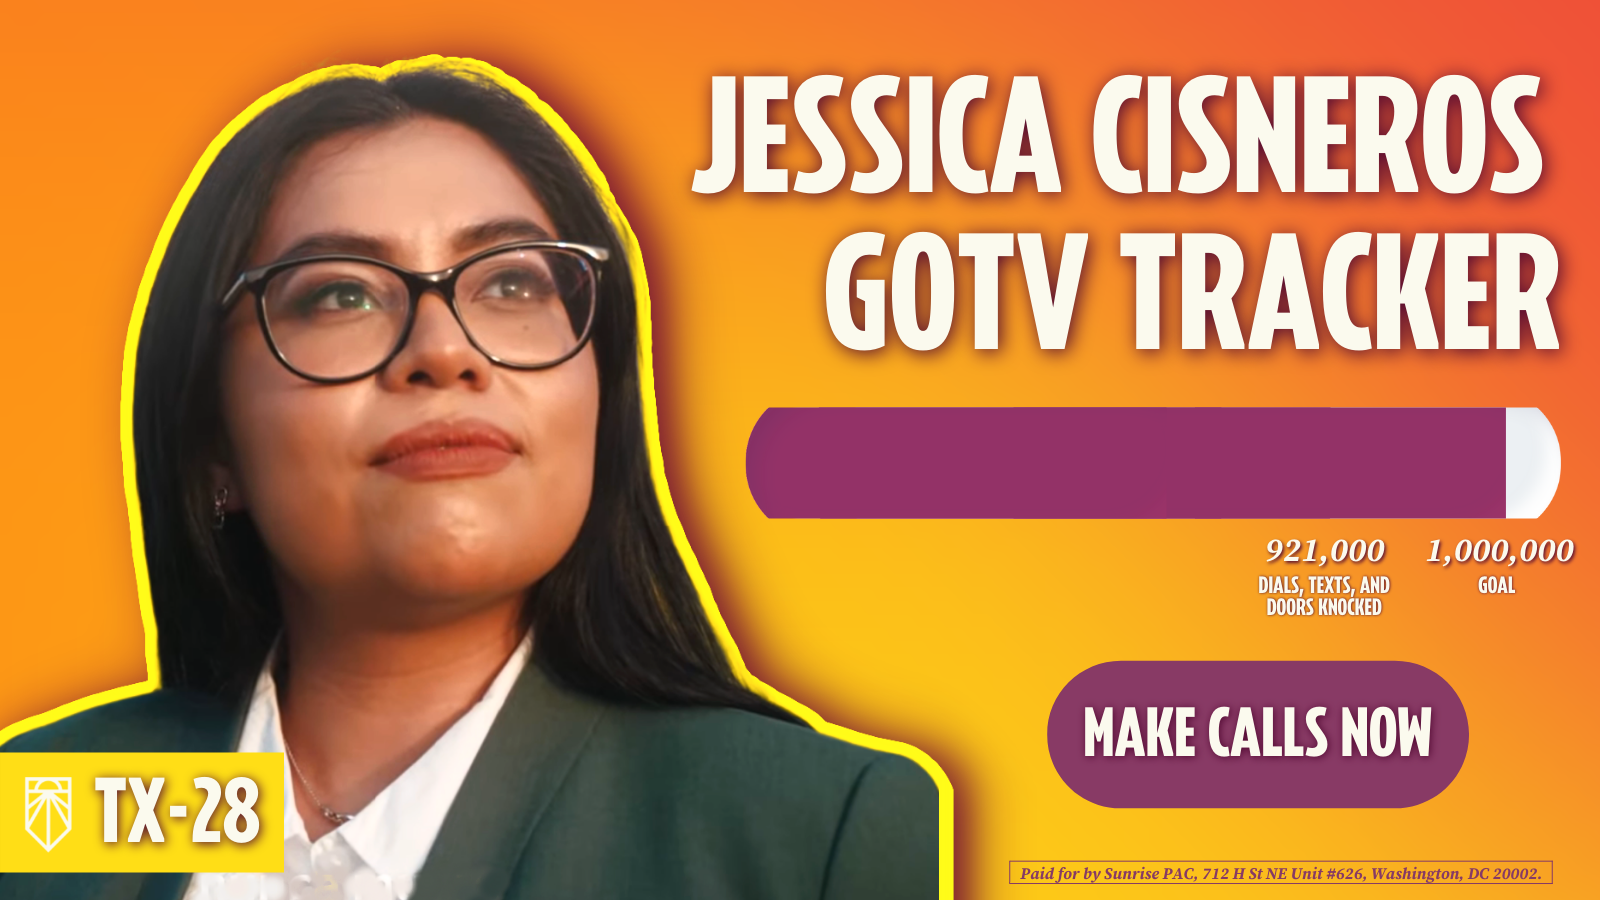 Jessica Cisneros GOTV Tracker - 921,000 tentativi di contatti elettorali, 1,000,000 di obiettivi - Effettua chiamate. Pagato da Sunrise PAC, 712 H St NE Unit n. 626, Washington, DC 20002.